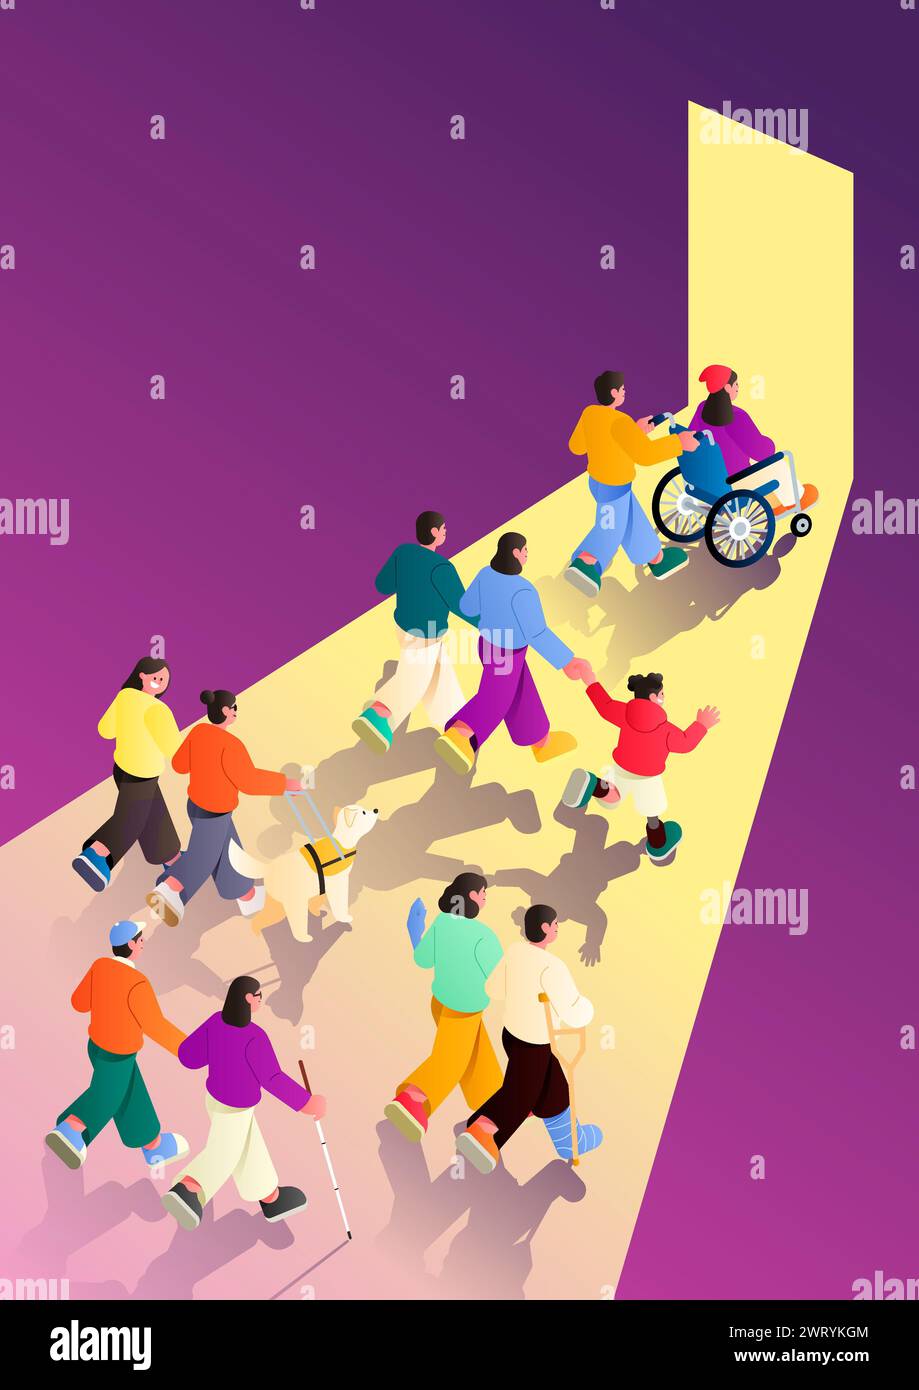 Les personnes handicapées et les personnes non handicapées se dirigent vers l'harmonie et l'unité Banque D'Images